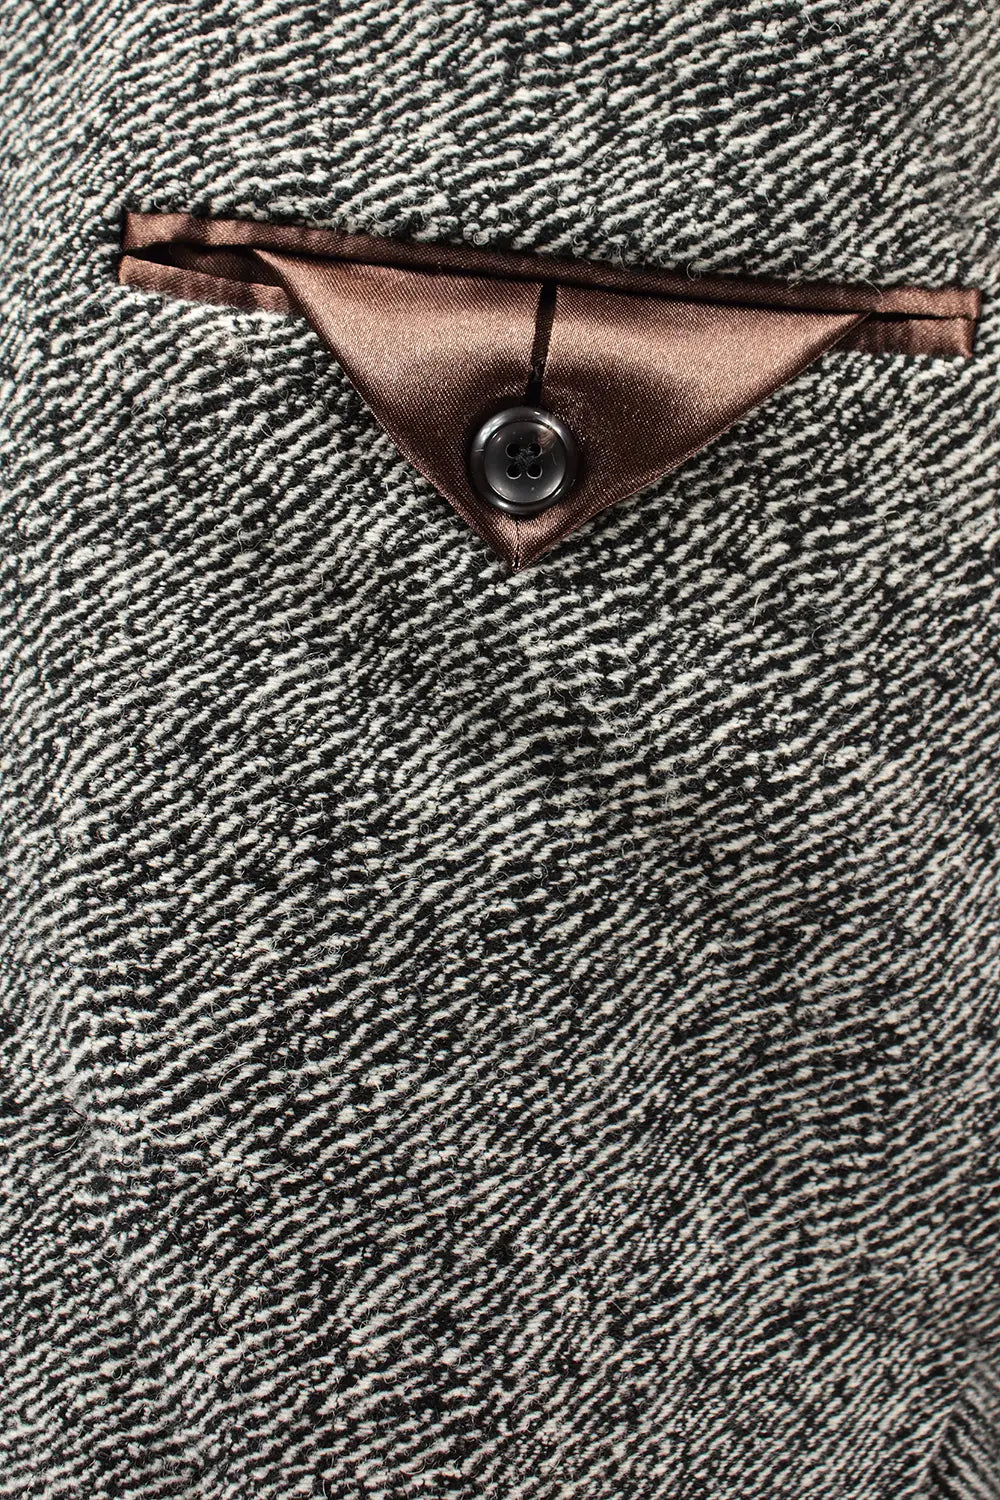 Cappotto doppiopetto in lana zebrata tasca interna